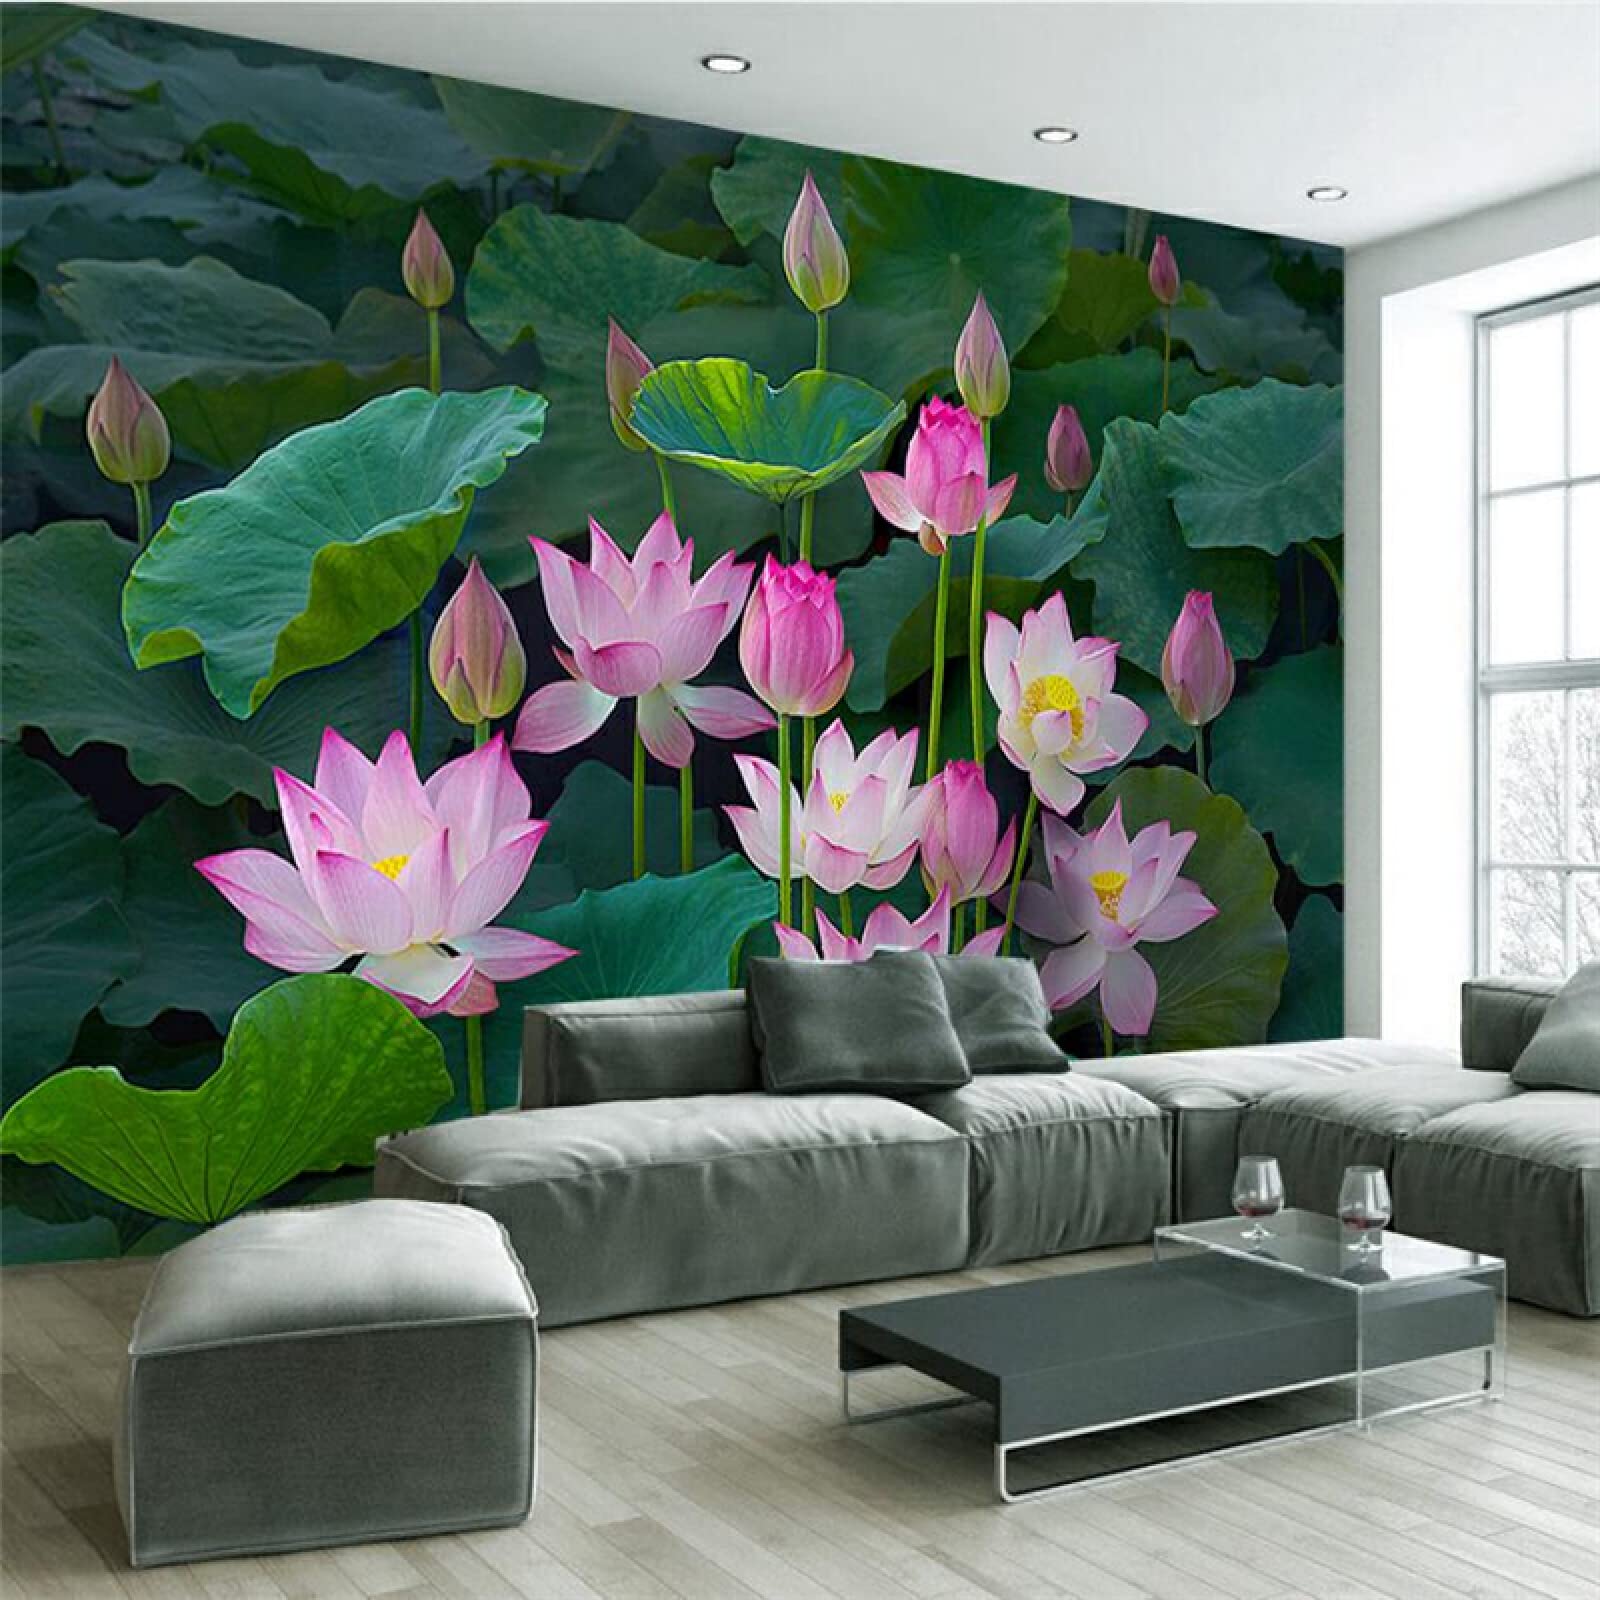 Mẫu tranh hoa sen vẽ tường đẹp mắt cho phòng khách